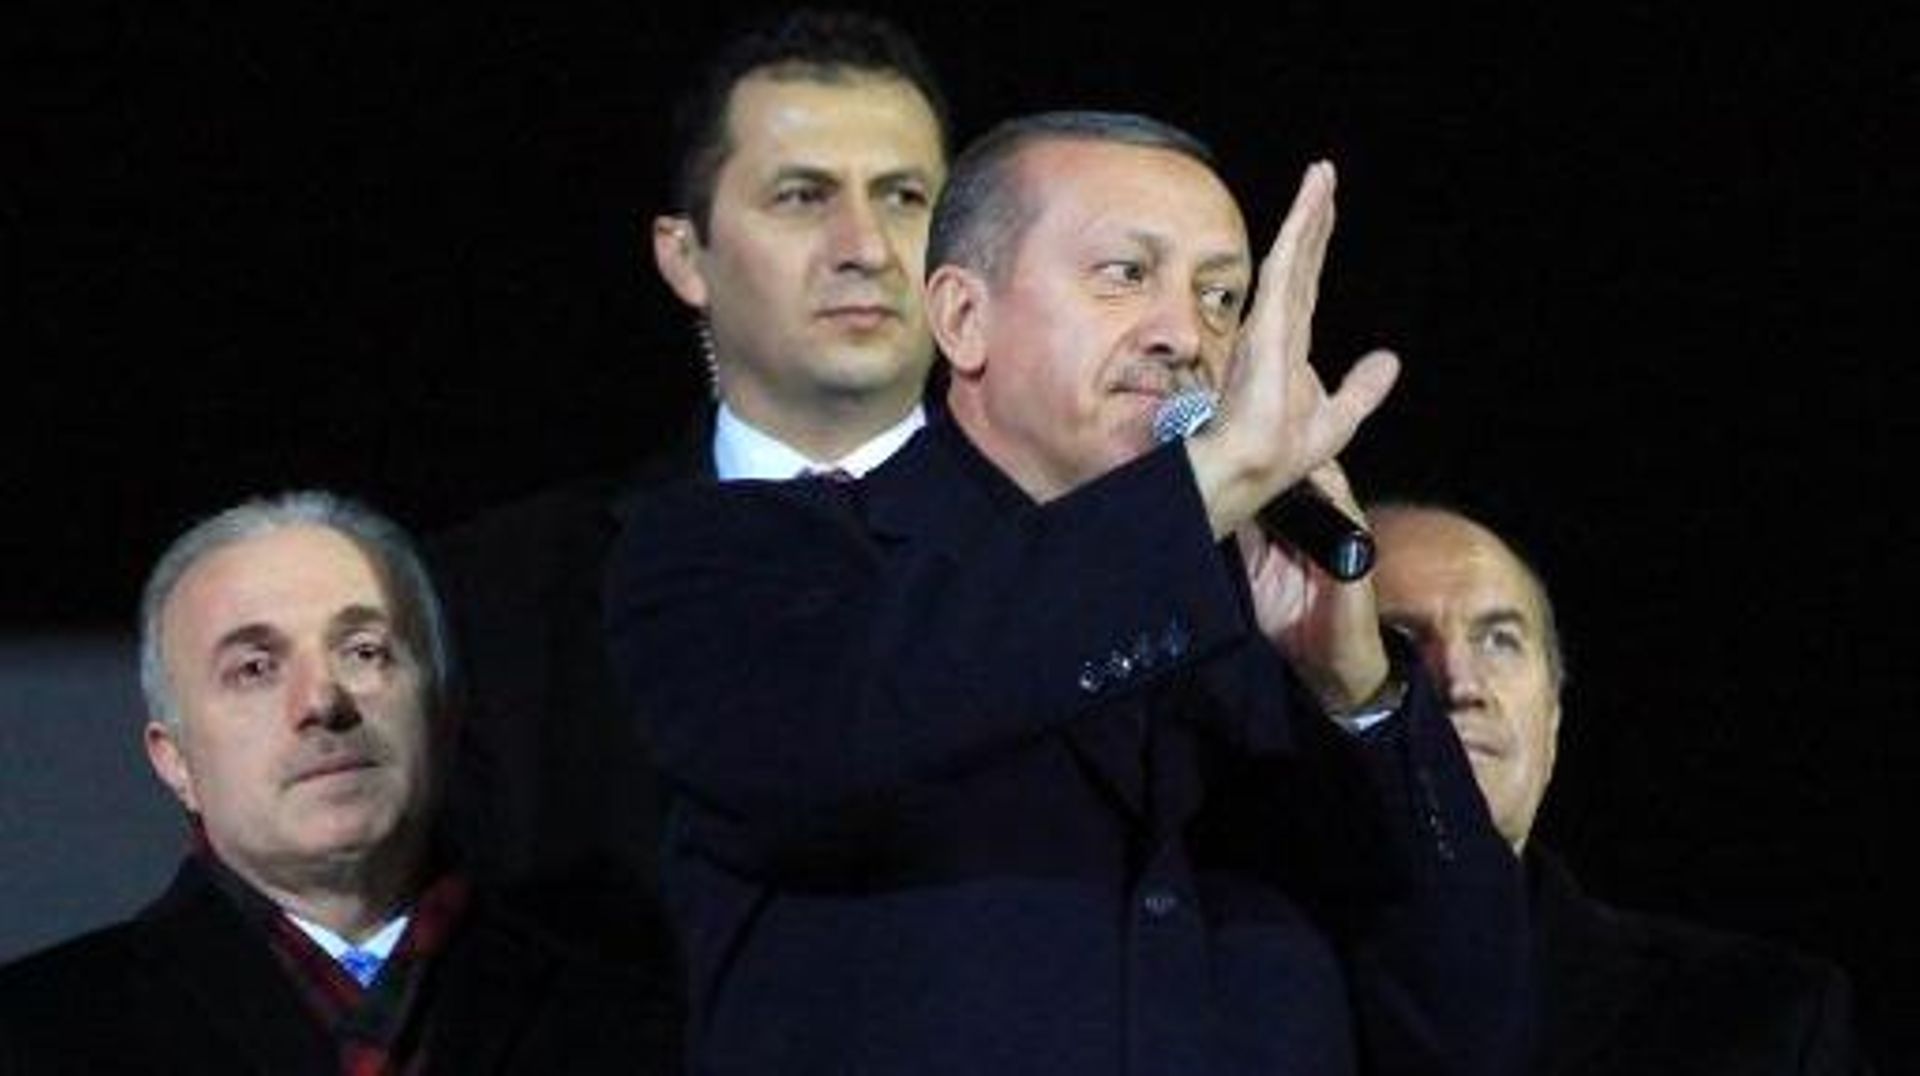 Le Premier ministre turc Recep Tayyip Erdogan salue ses partisans, le 27 décembre 2013 à Istanbul